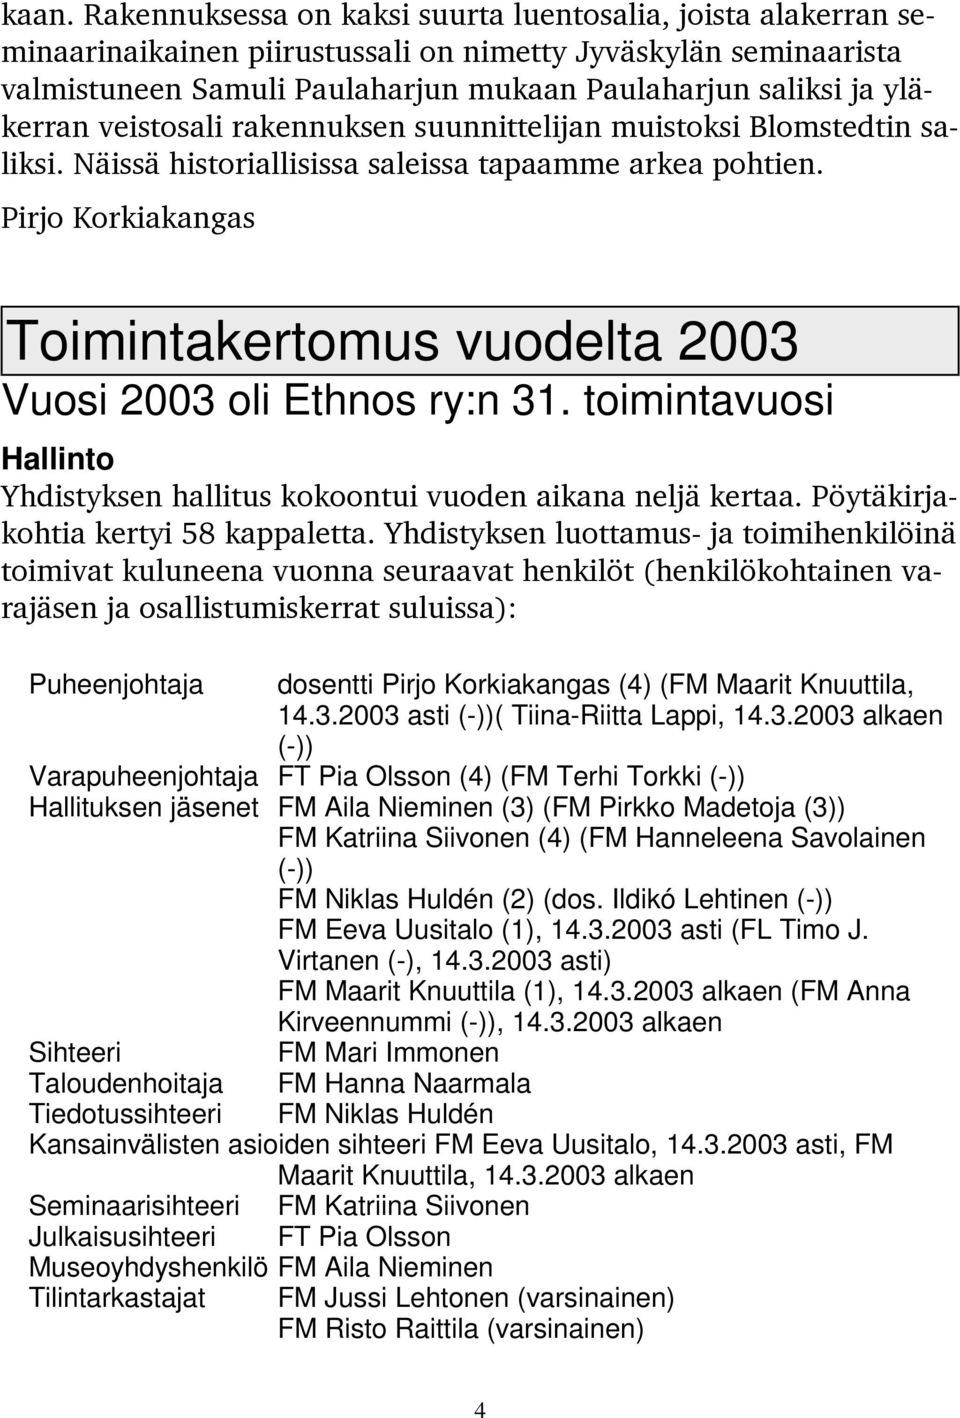 Pirjo Korkiakangas Toimintakertomus vuodelta 2003 Vuosi 2003 oli Ethnos ry:n 31. toimintavuosi Hallinto Yhdistyksen hallitus kokoontui vuoden aikana neljä kertaa.